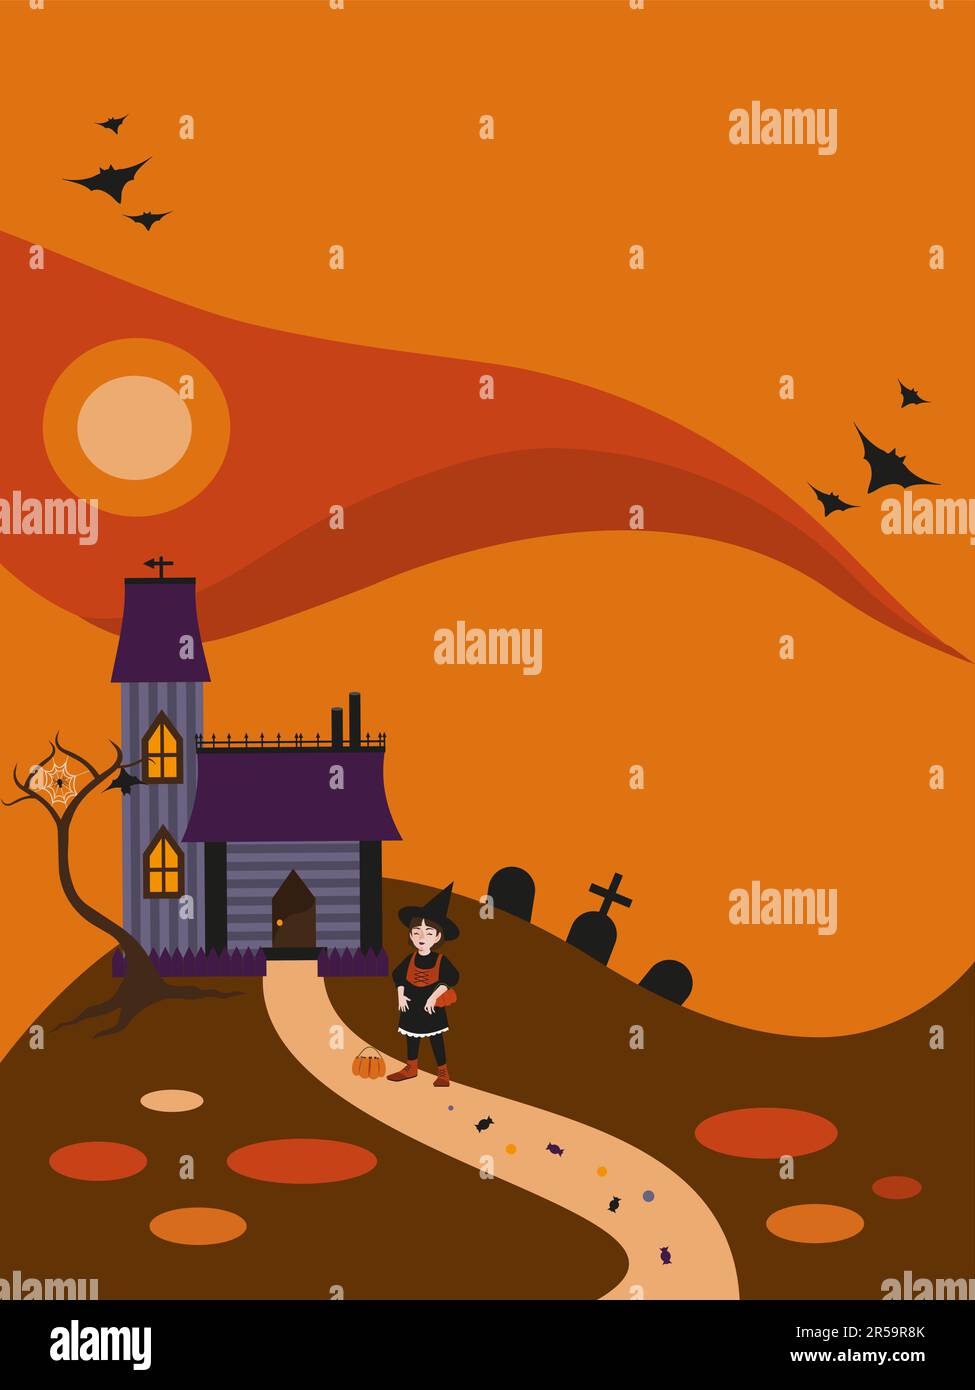 Halloween-Weihnachtskarte. Eine junge Hexe mit einem netten Gesicht in der Nähe des Hauses, Friedhof und einem Baum mit Netz, Fledermäuse fliegen am Himmel. Süßigkeiten auf der Straße. Stock Vektor